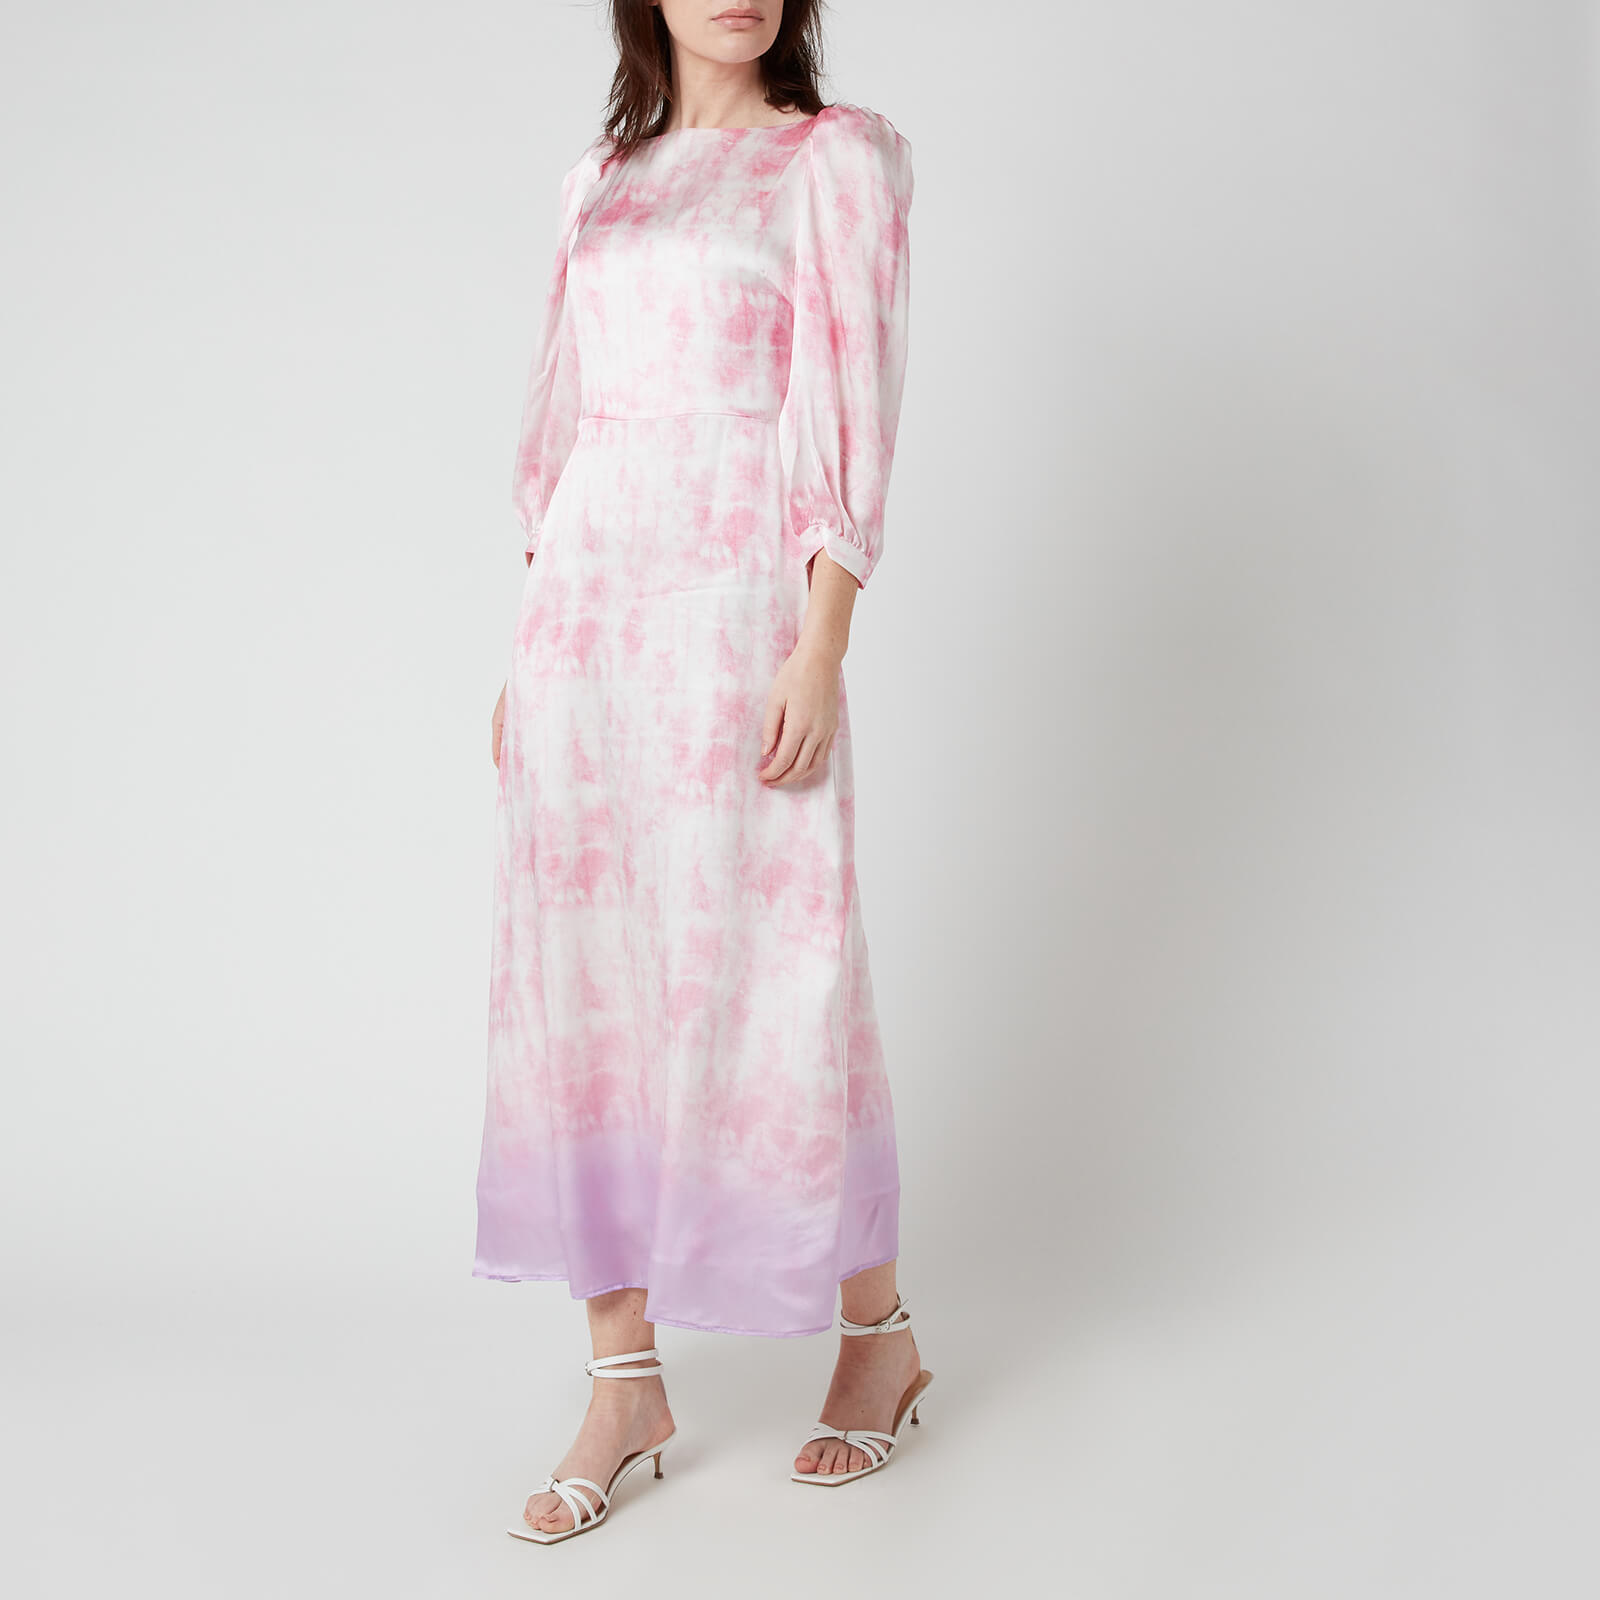 Olivia Rubin Women's Lara Dress - Tie Dye - UK 10